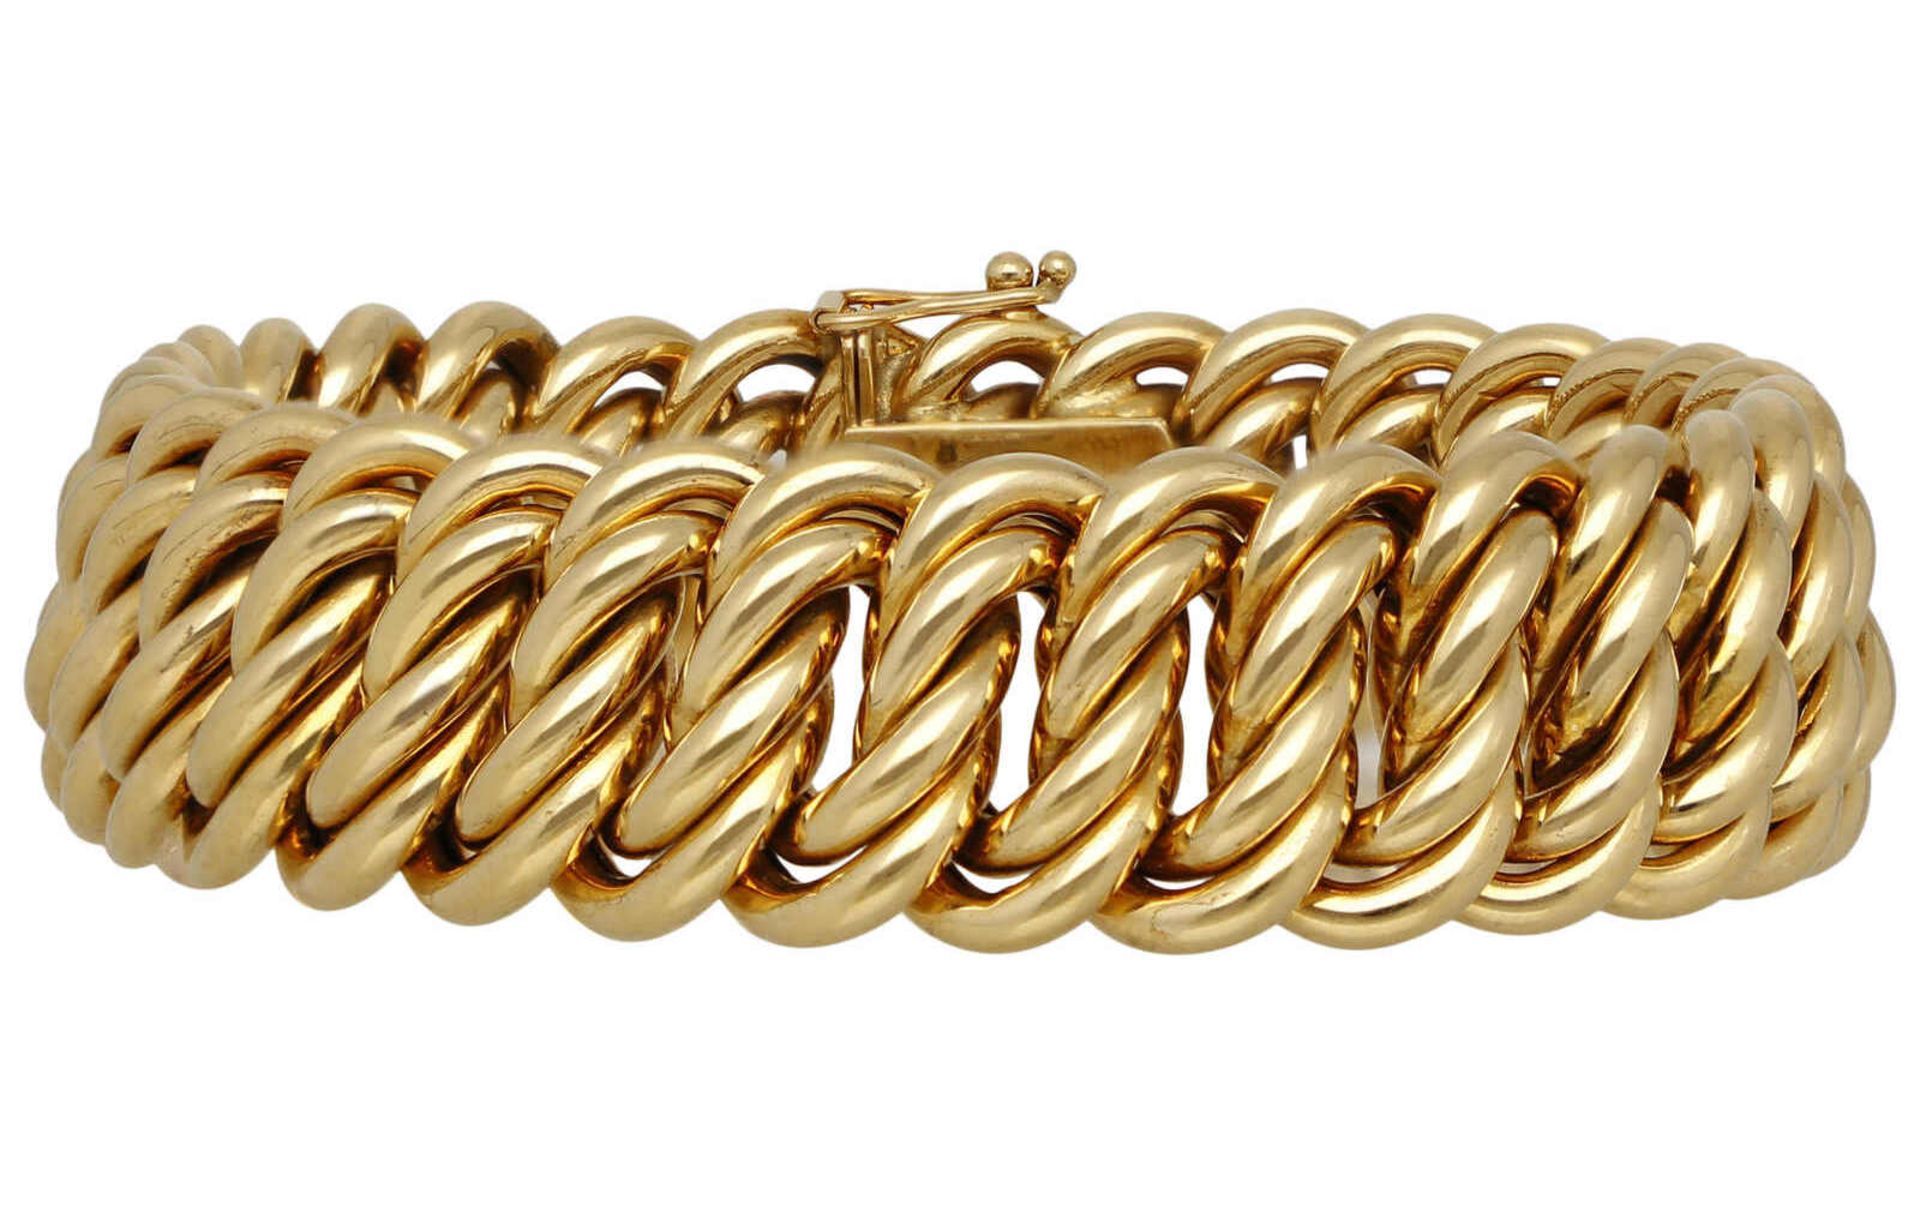 Garibaldi-Armband Dekoratives Armband im Garibaldi-Muster in Gelbgold 18K mit Kastenschloss und